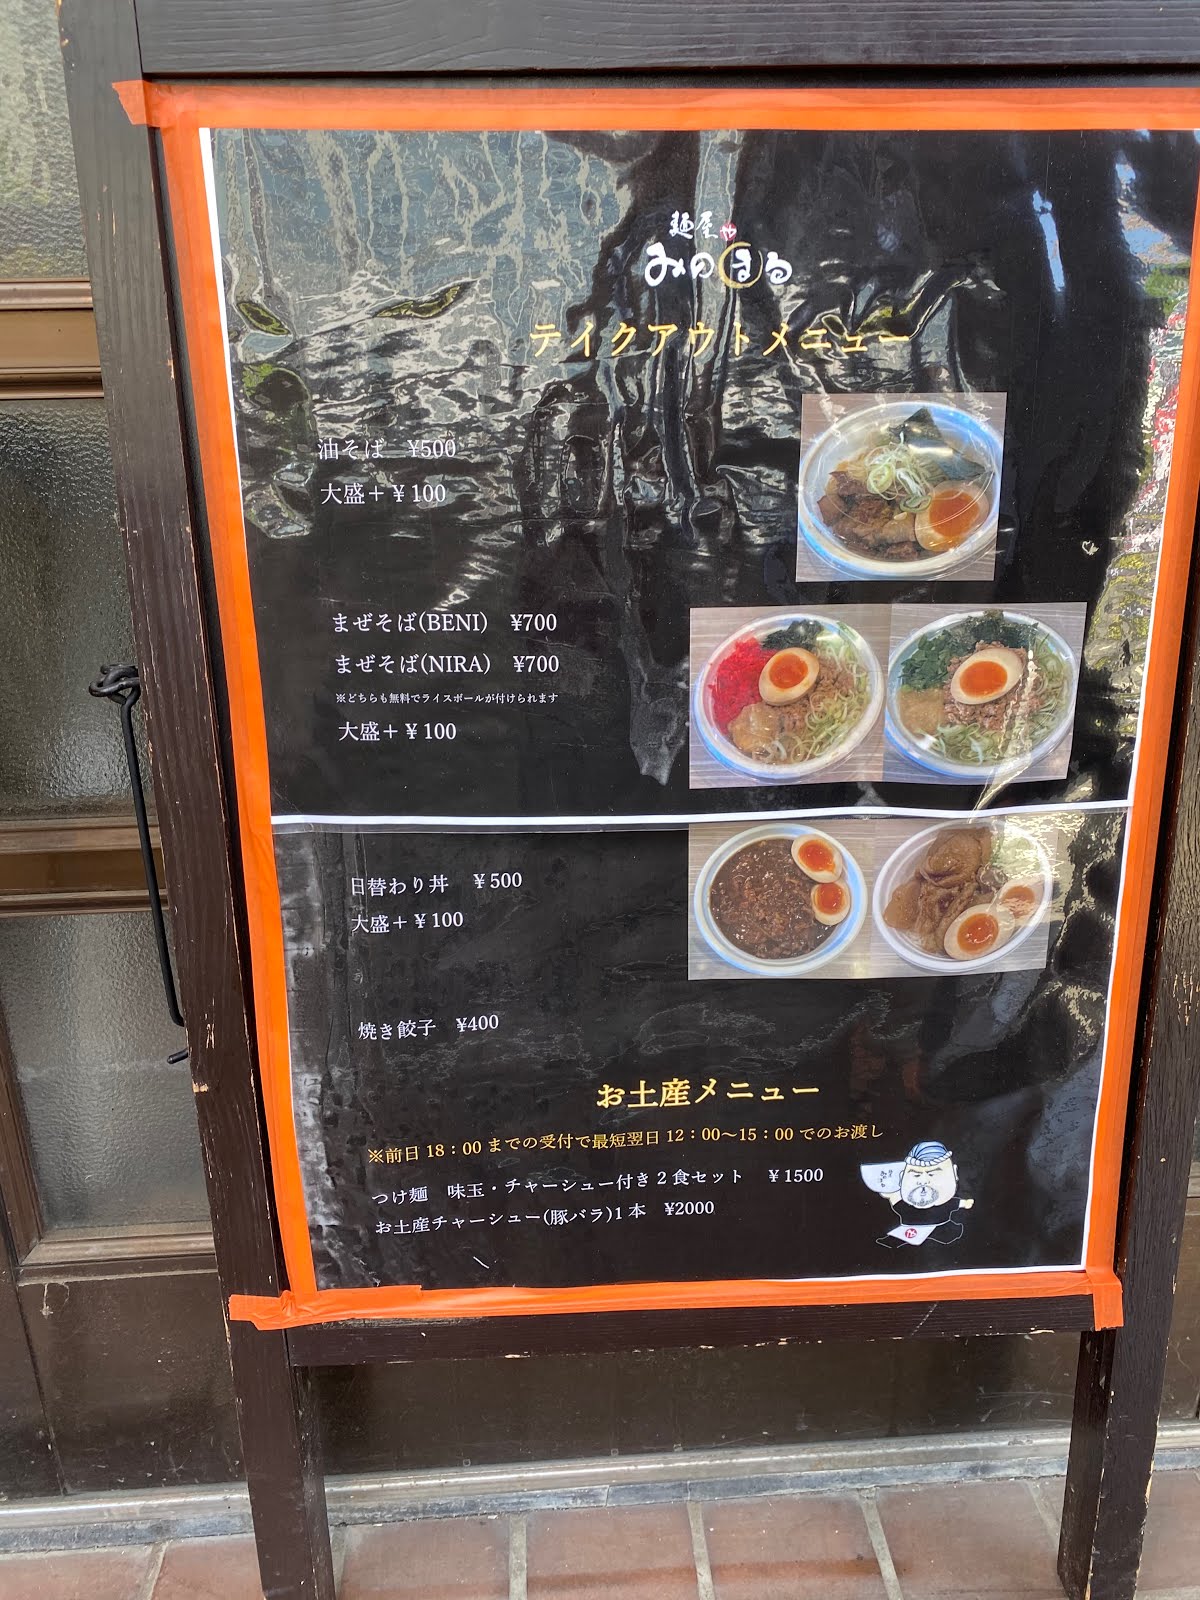 神奈川工科大学 情報工学科 ブログ 麺屋 みのまる 厚木エール飯